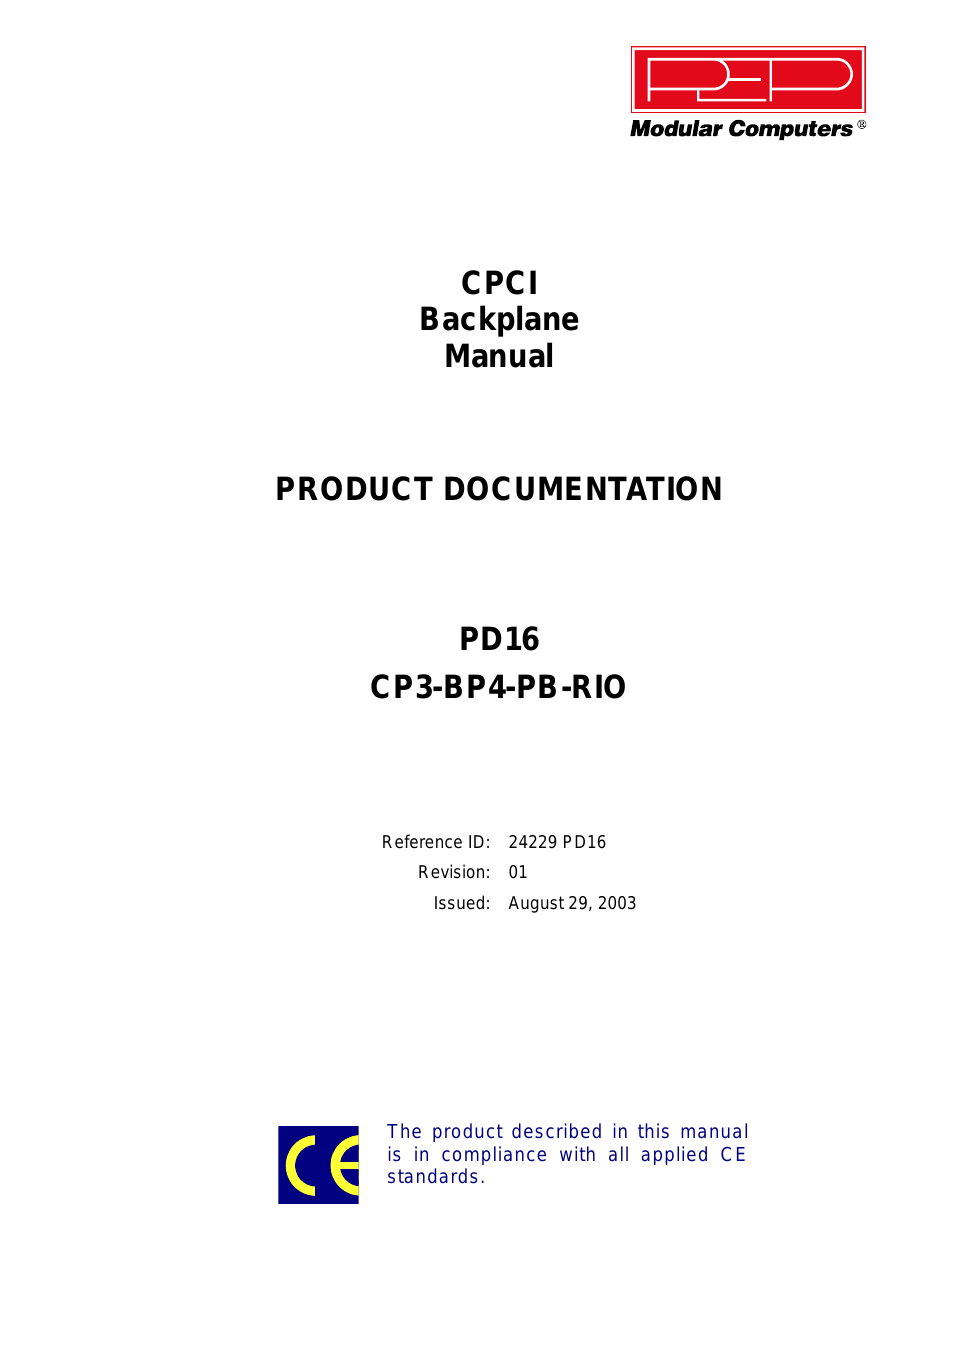 CP3-BP4-PB-RIO